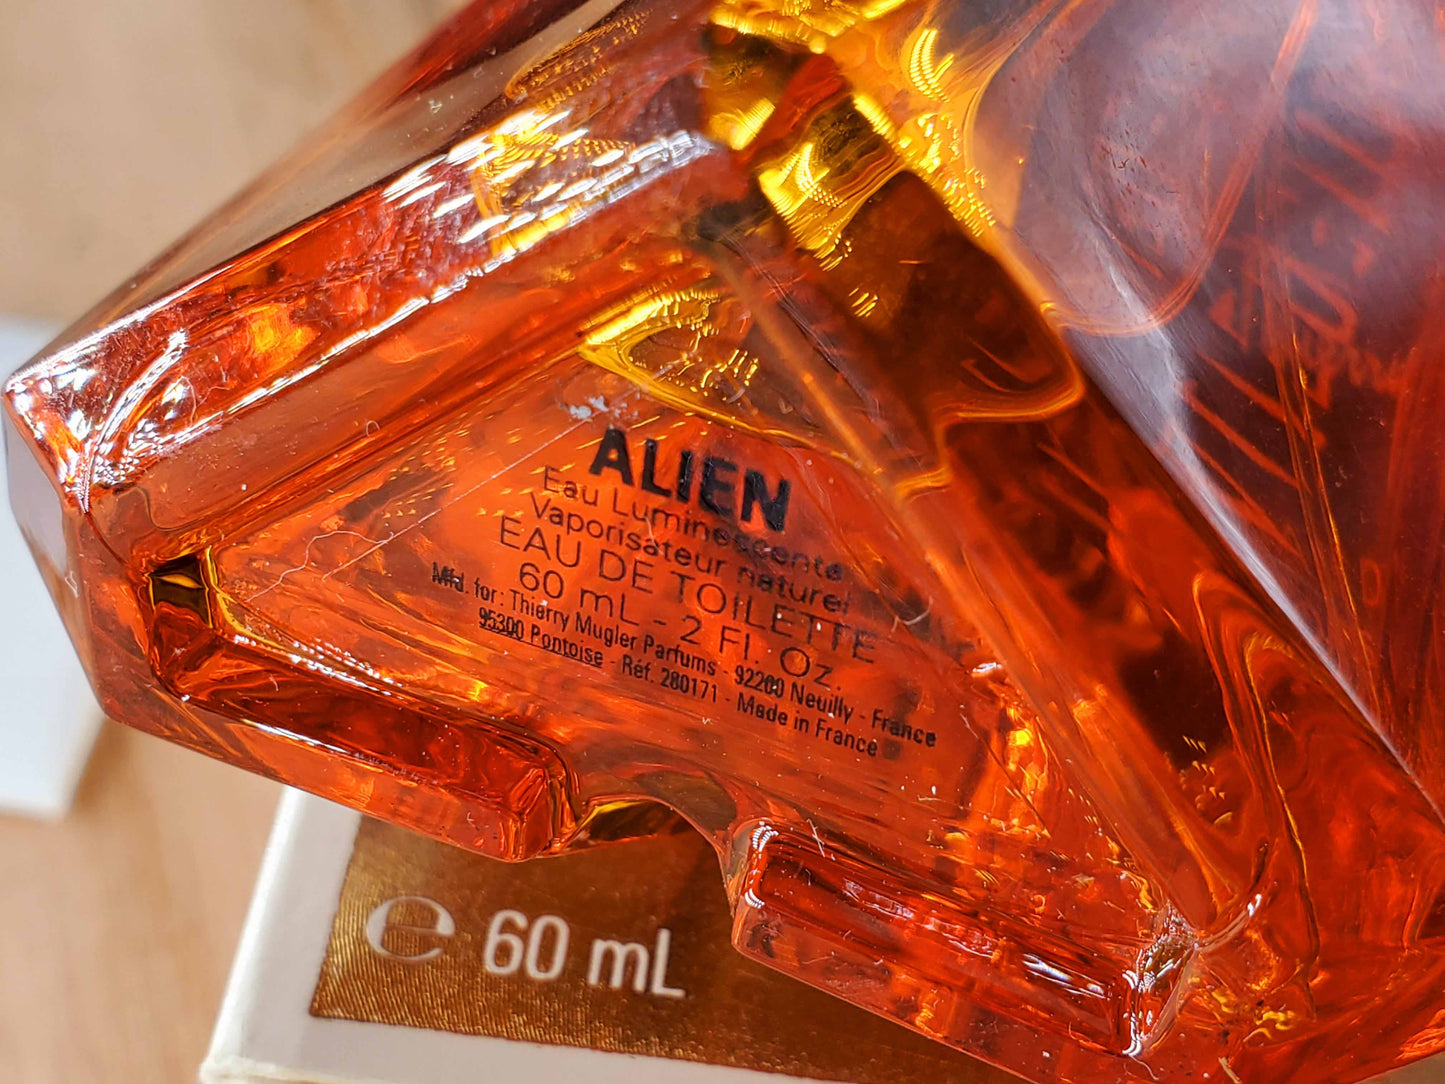 Alien Eau Luminescente Mugler for women EDT Spray 60 ml 2 oz, Vintage, Rare